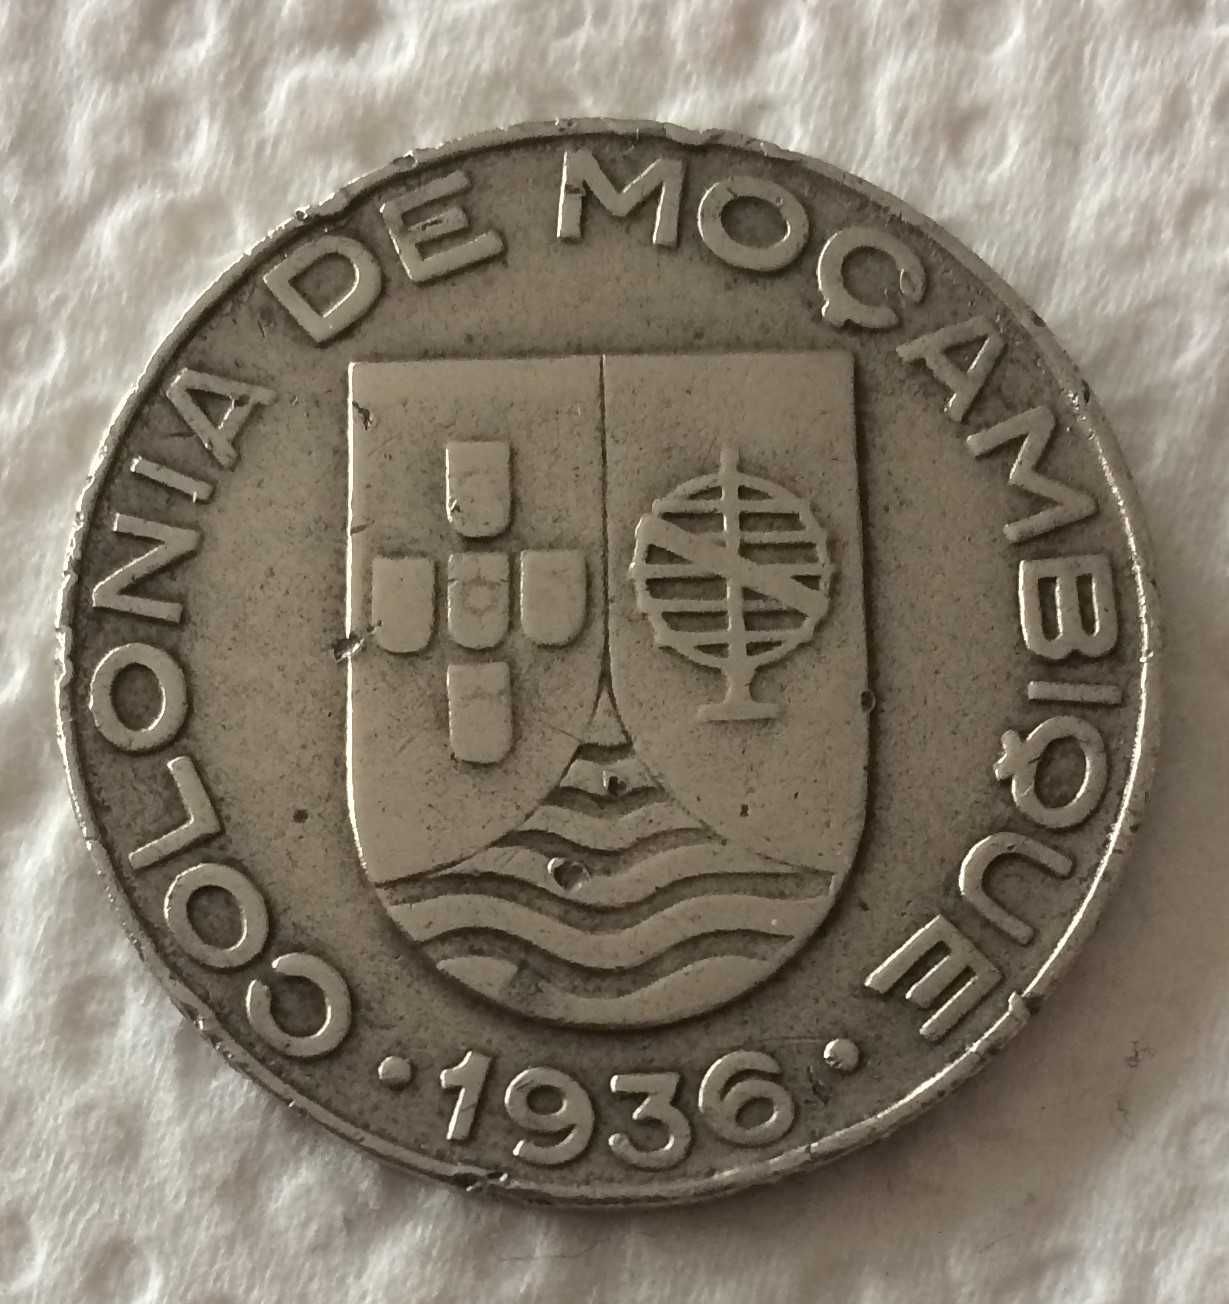 Lote 1$00 de Moçambique